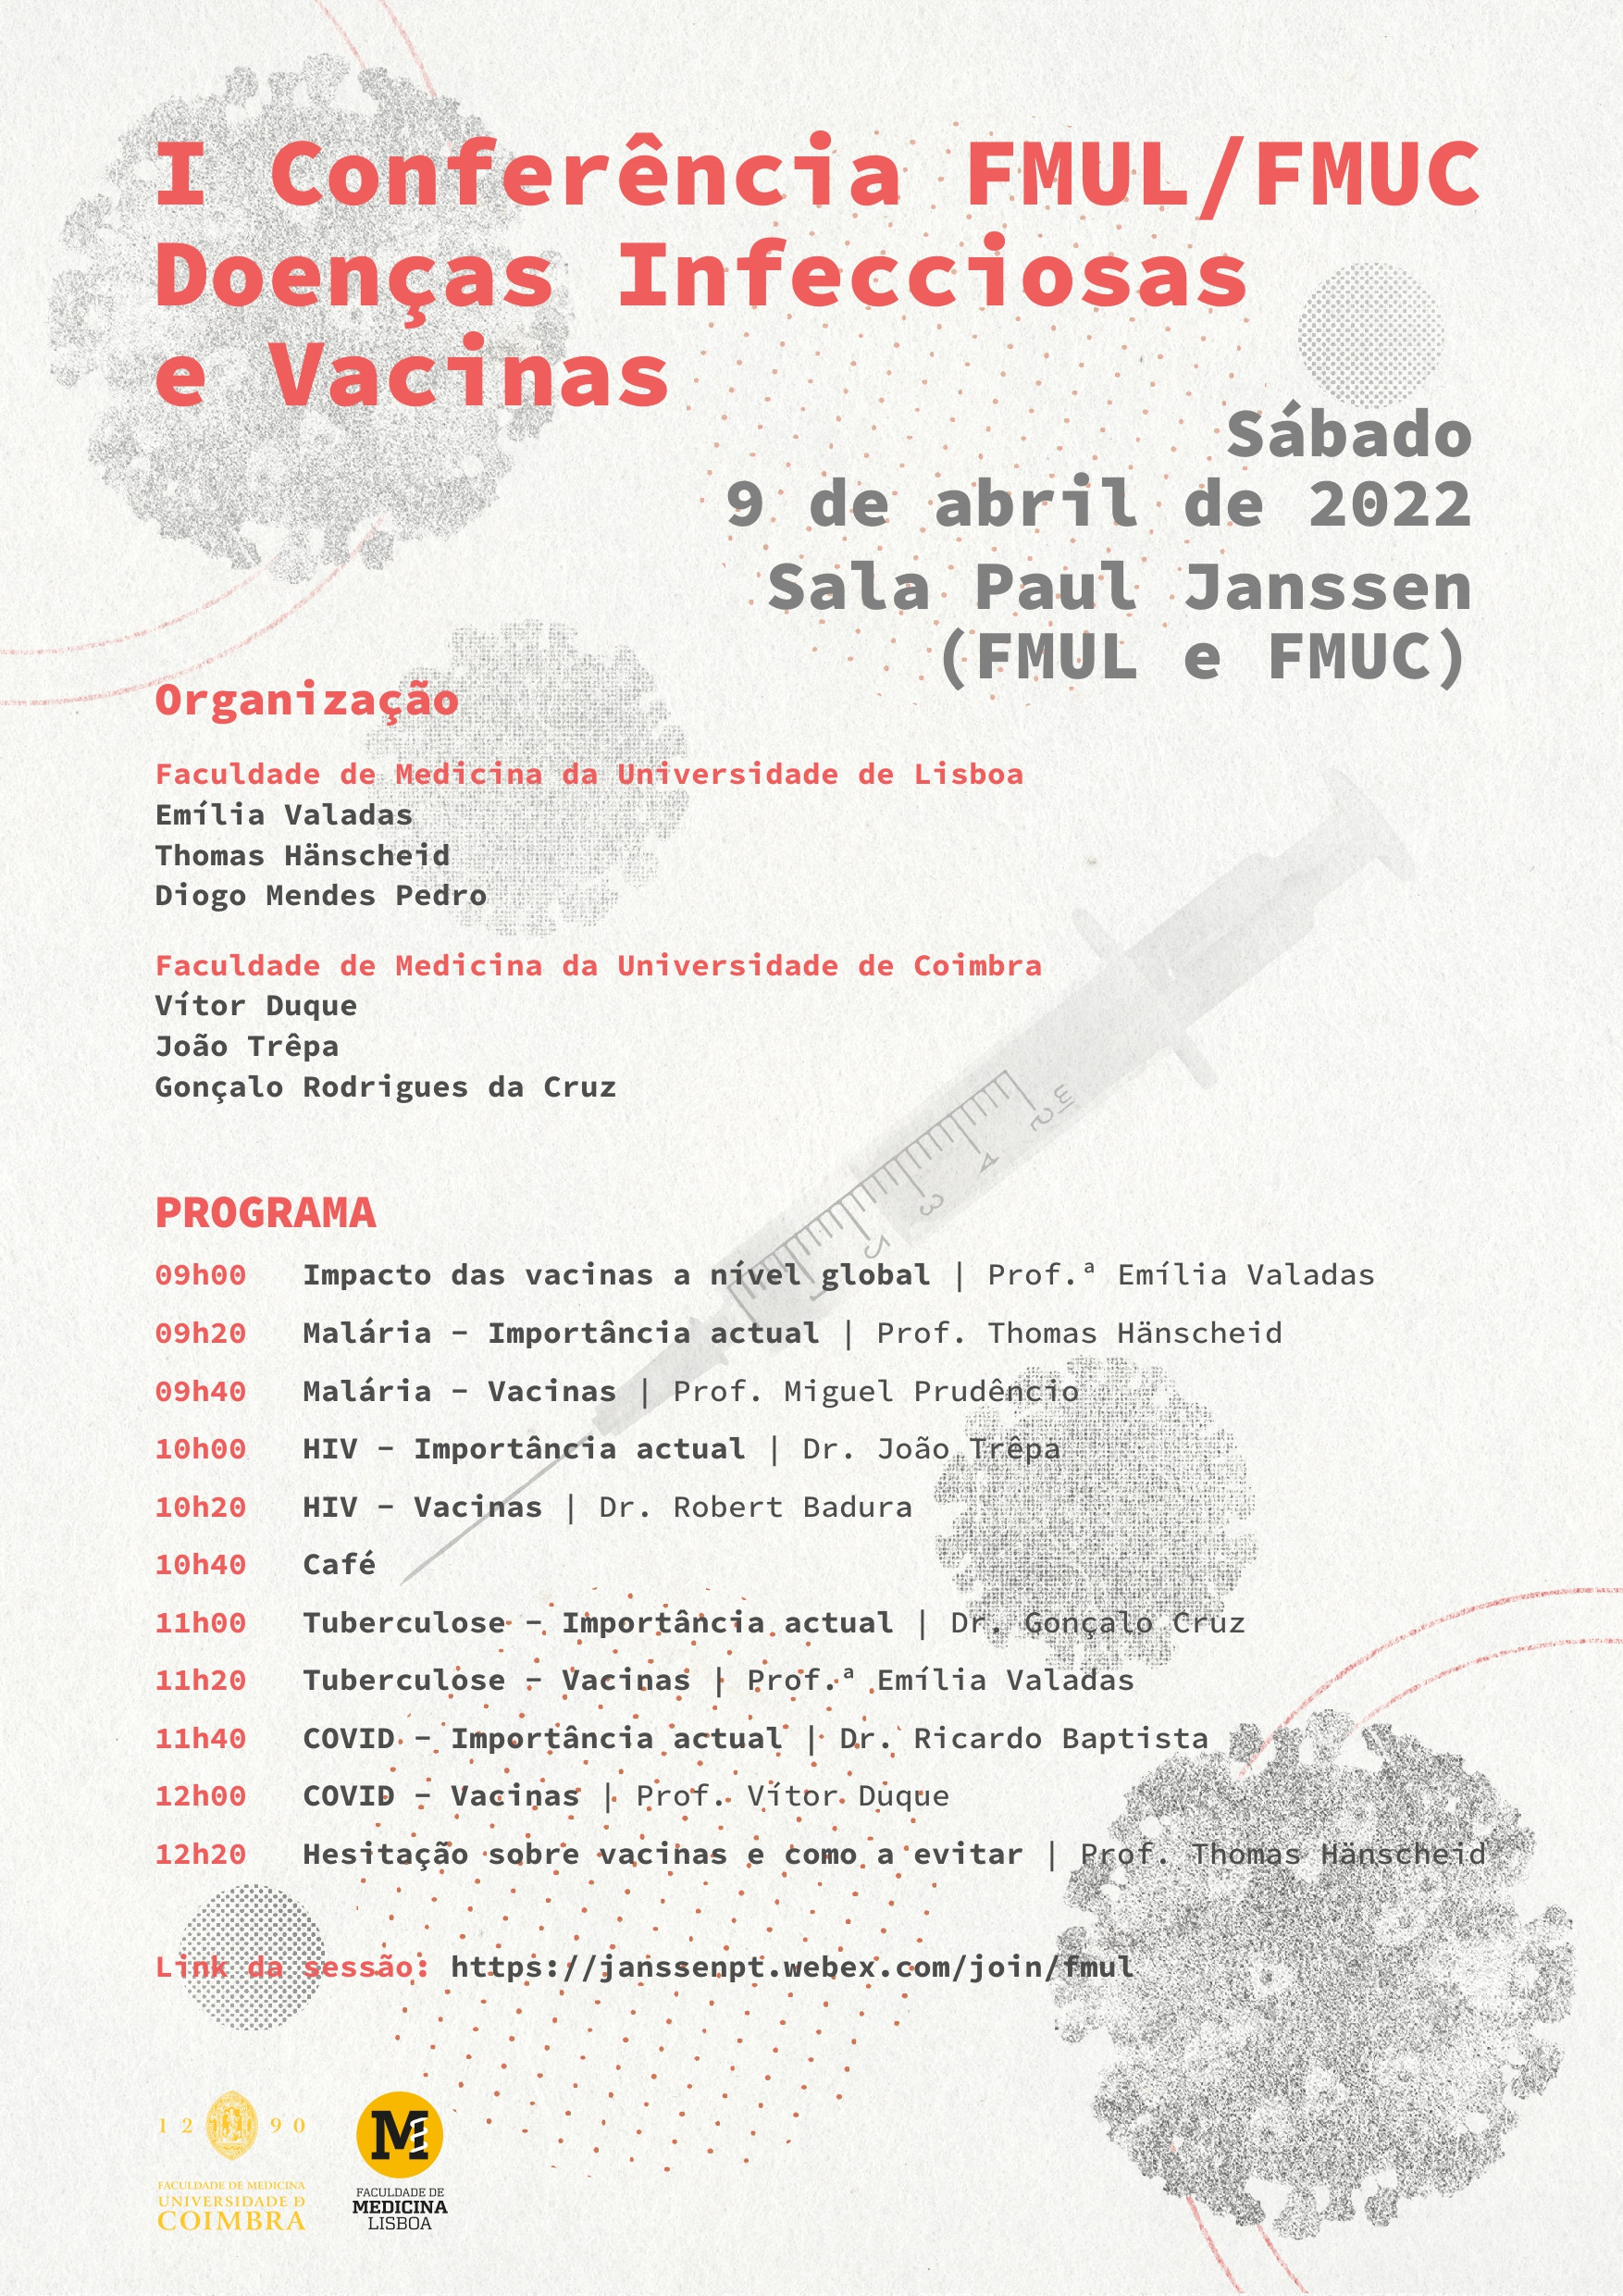 cartaz com desenhos de vacinas e virus